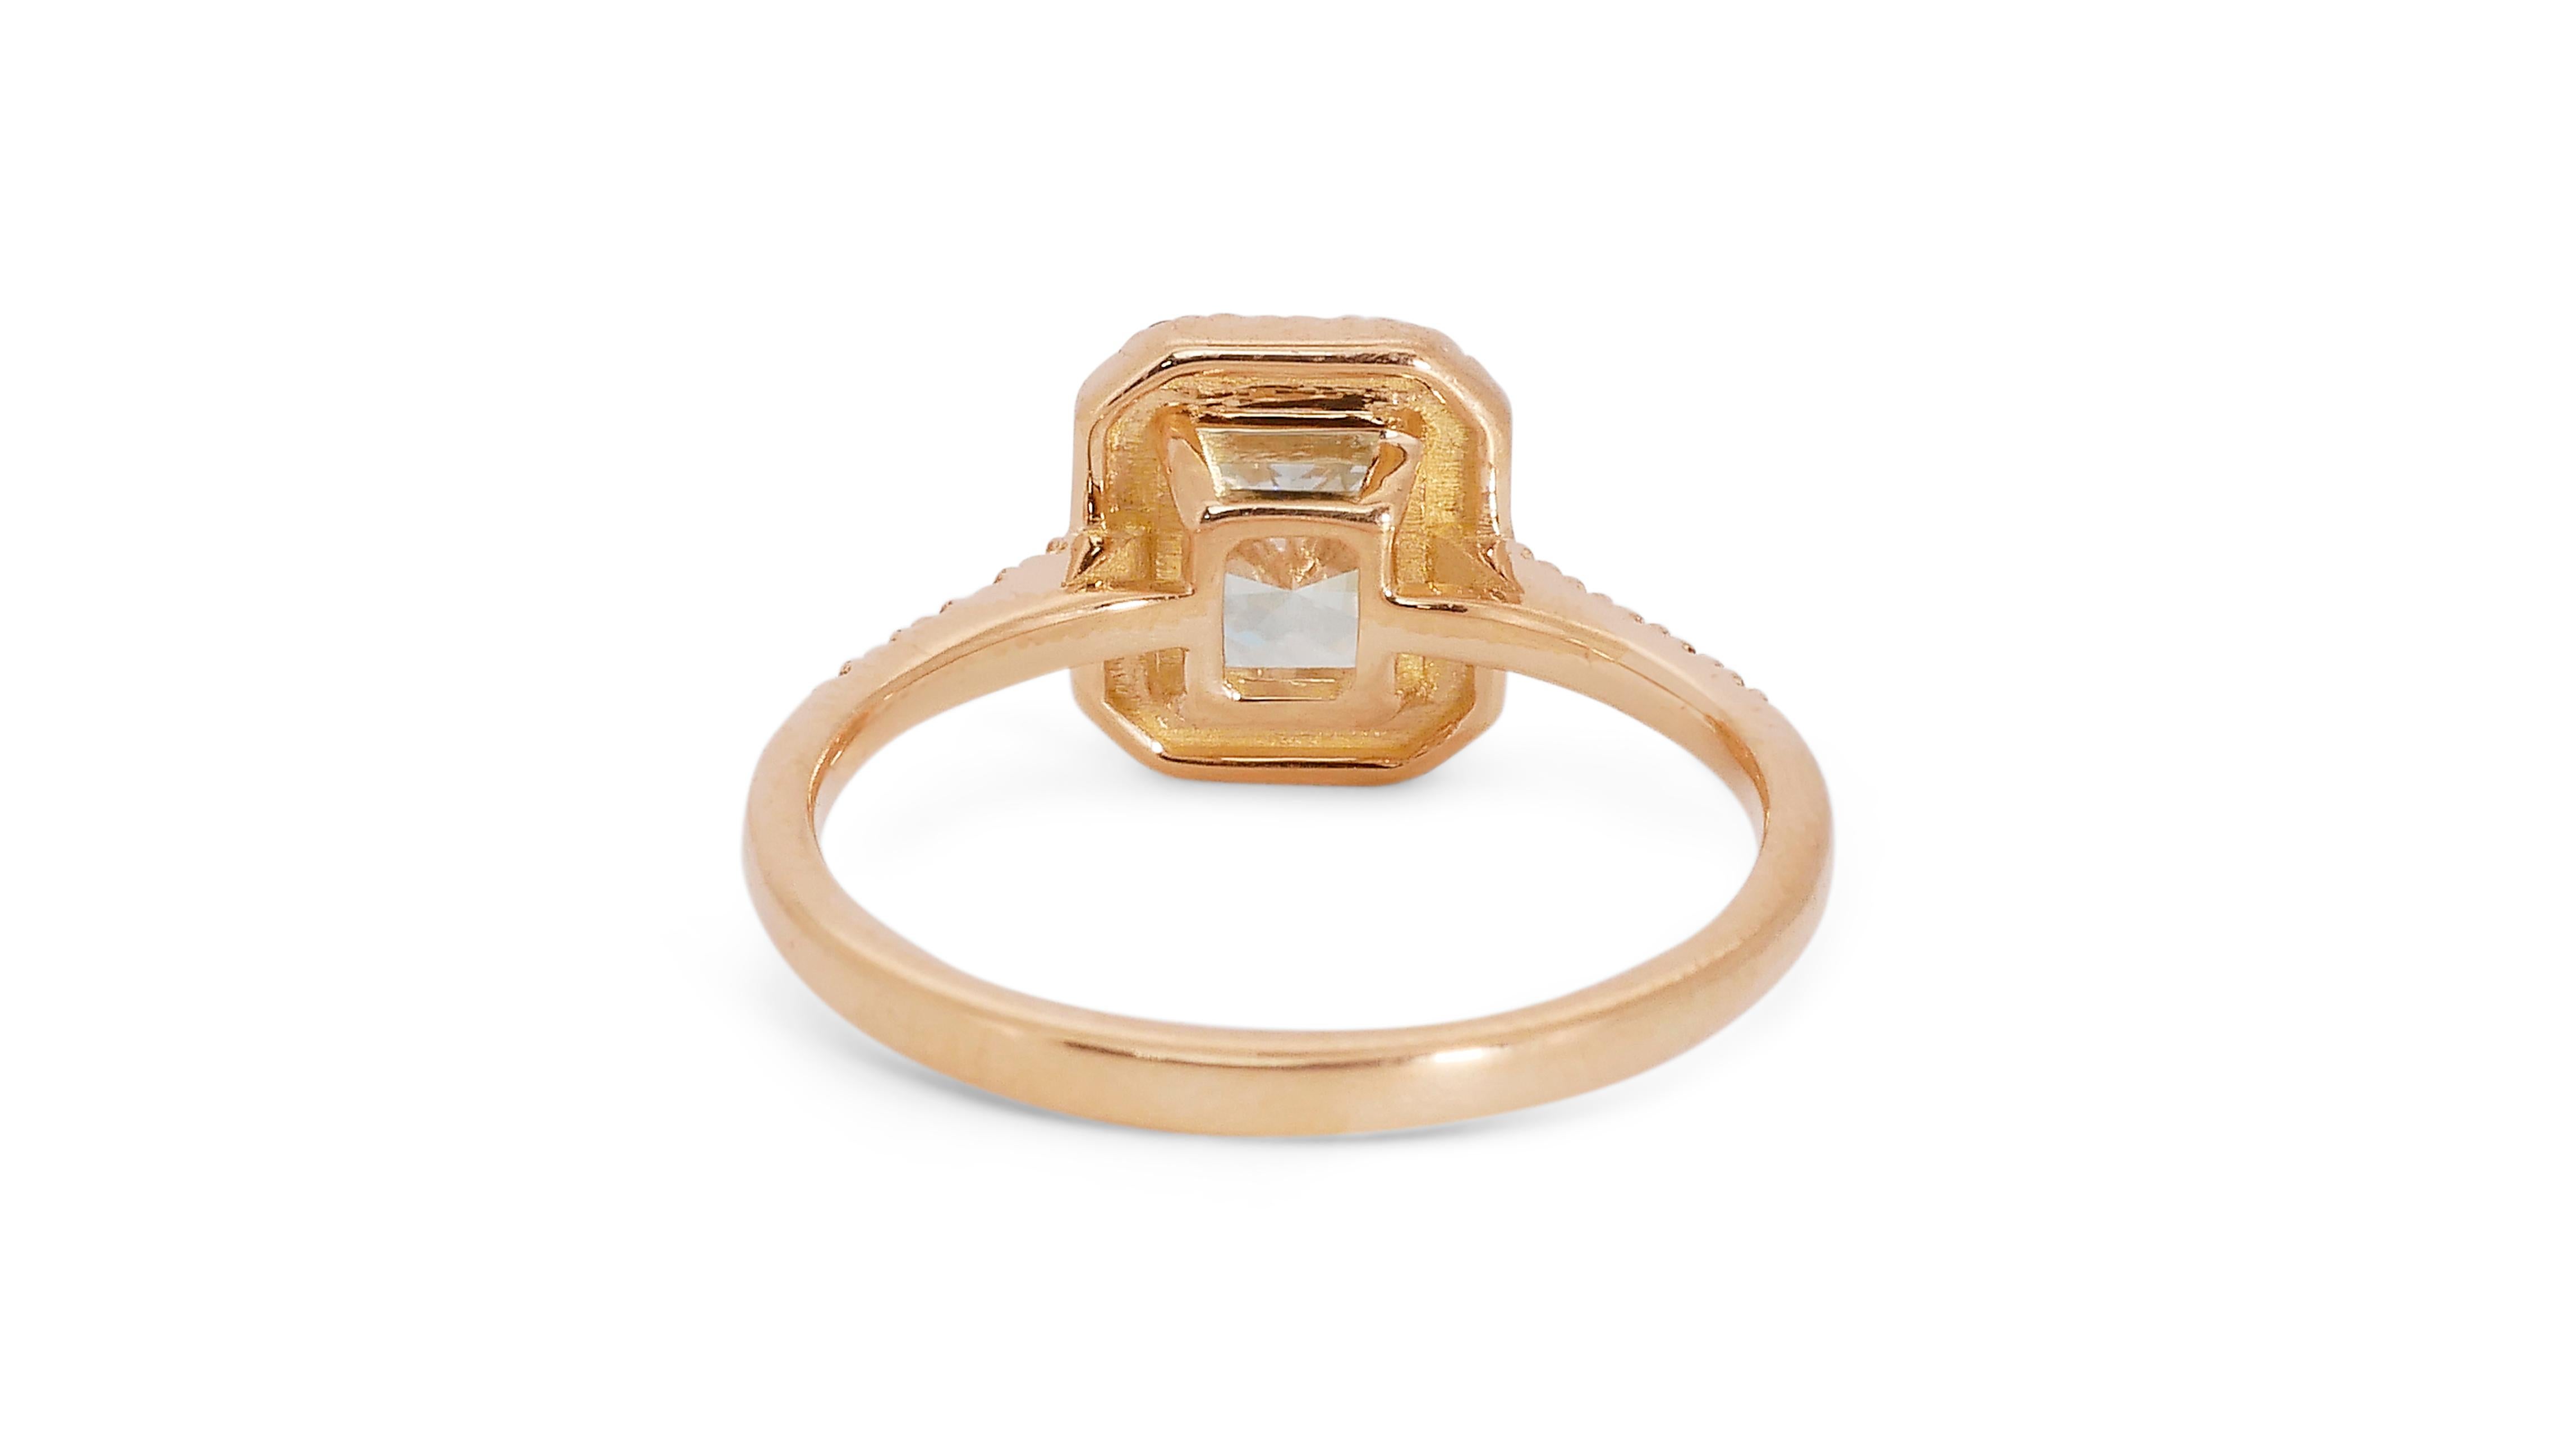 Ravishing 18k Yellow Gold Halo Ring w/ 1.22ct Natural Diamonds IGI Certificate 3